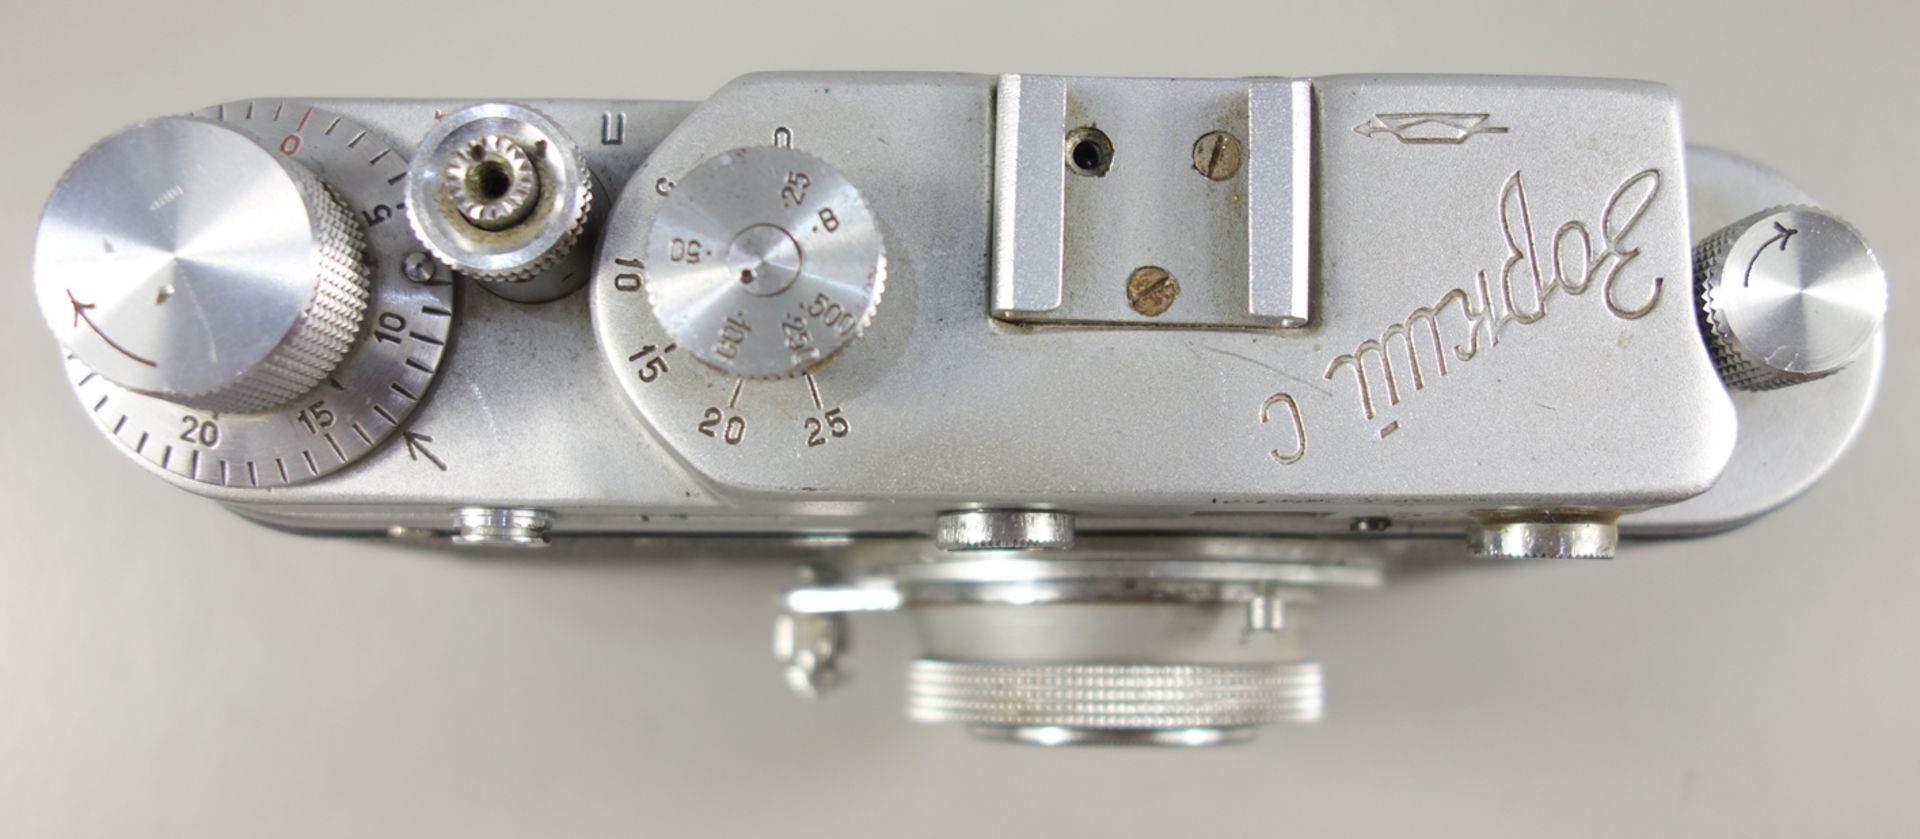 Messsucherkamera KMZ Zorki C, späte 1950er Jahre, russische Leica-Kopie, Serien-Nr. 57205843, - Bild 2 aus 4